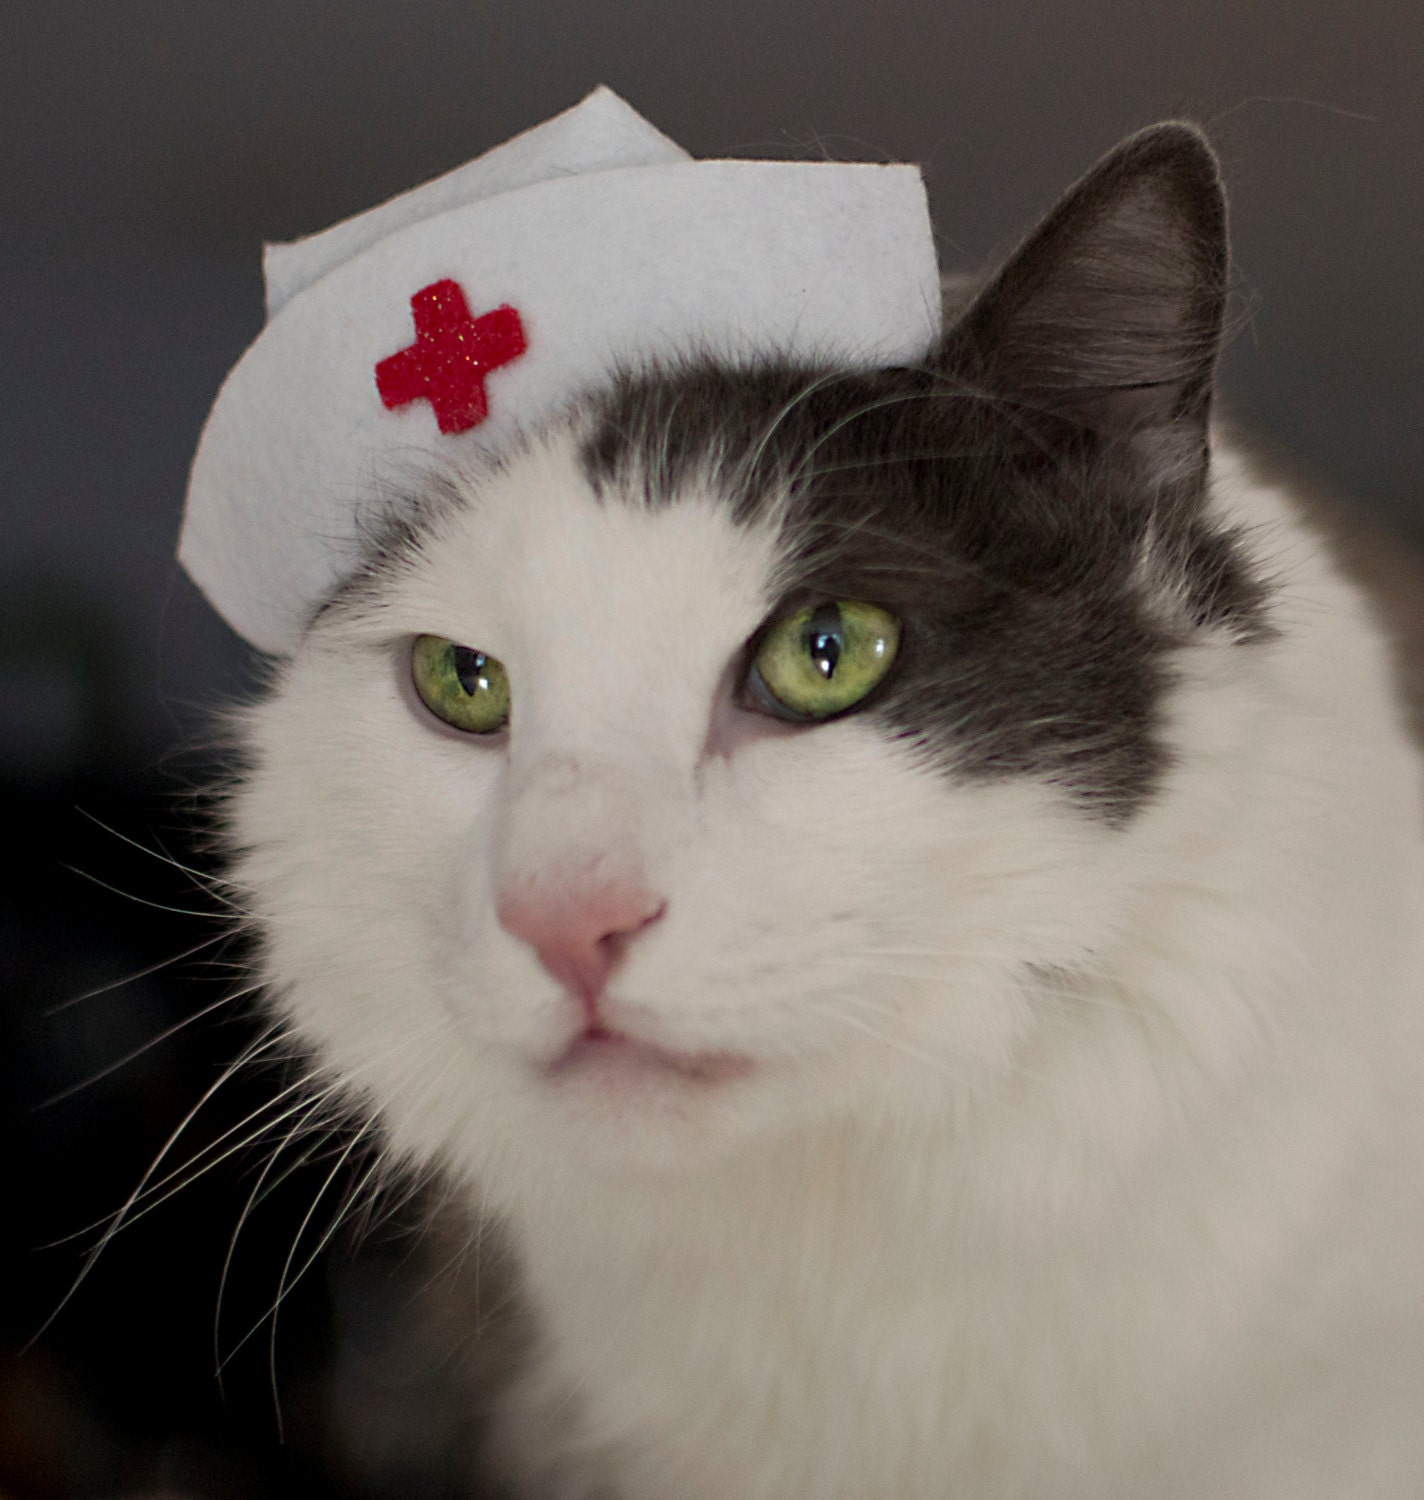  Nurse  Kitty Cat  Hat